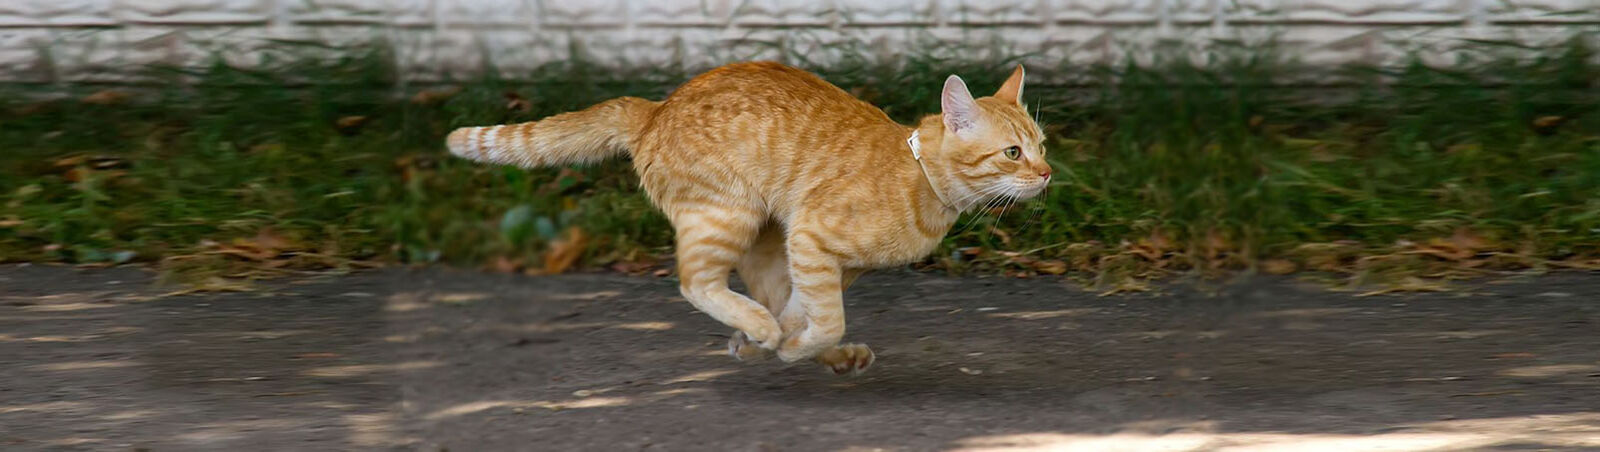 Eine Katze läuft galoppierend einen Weg entlang.